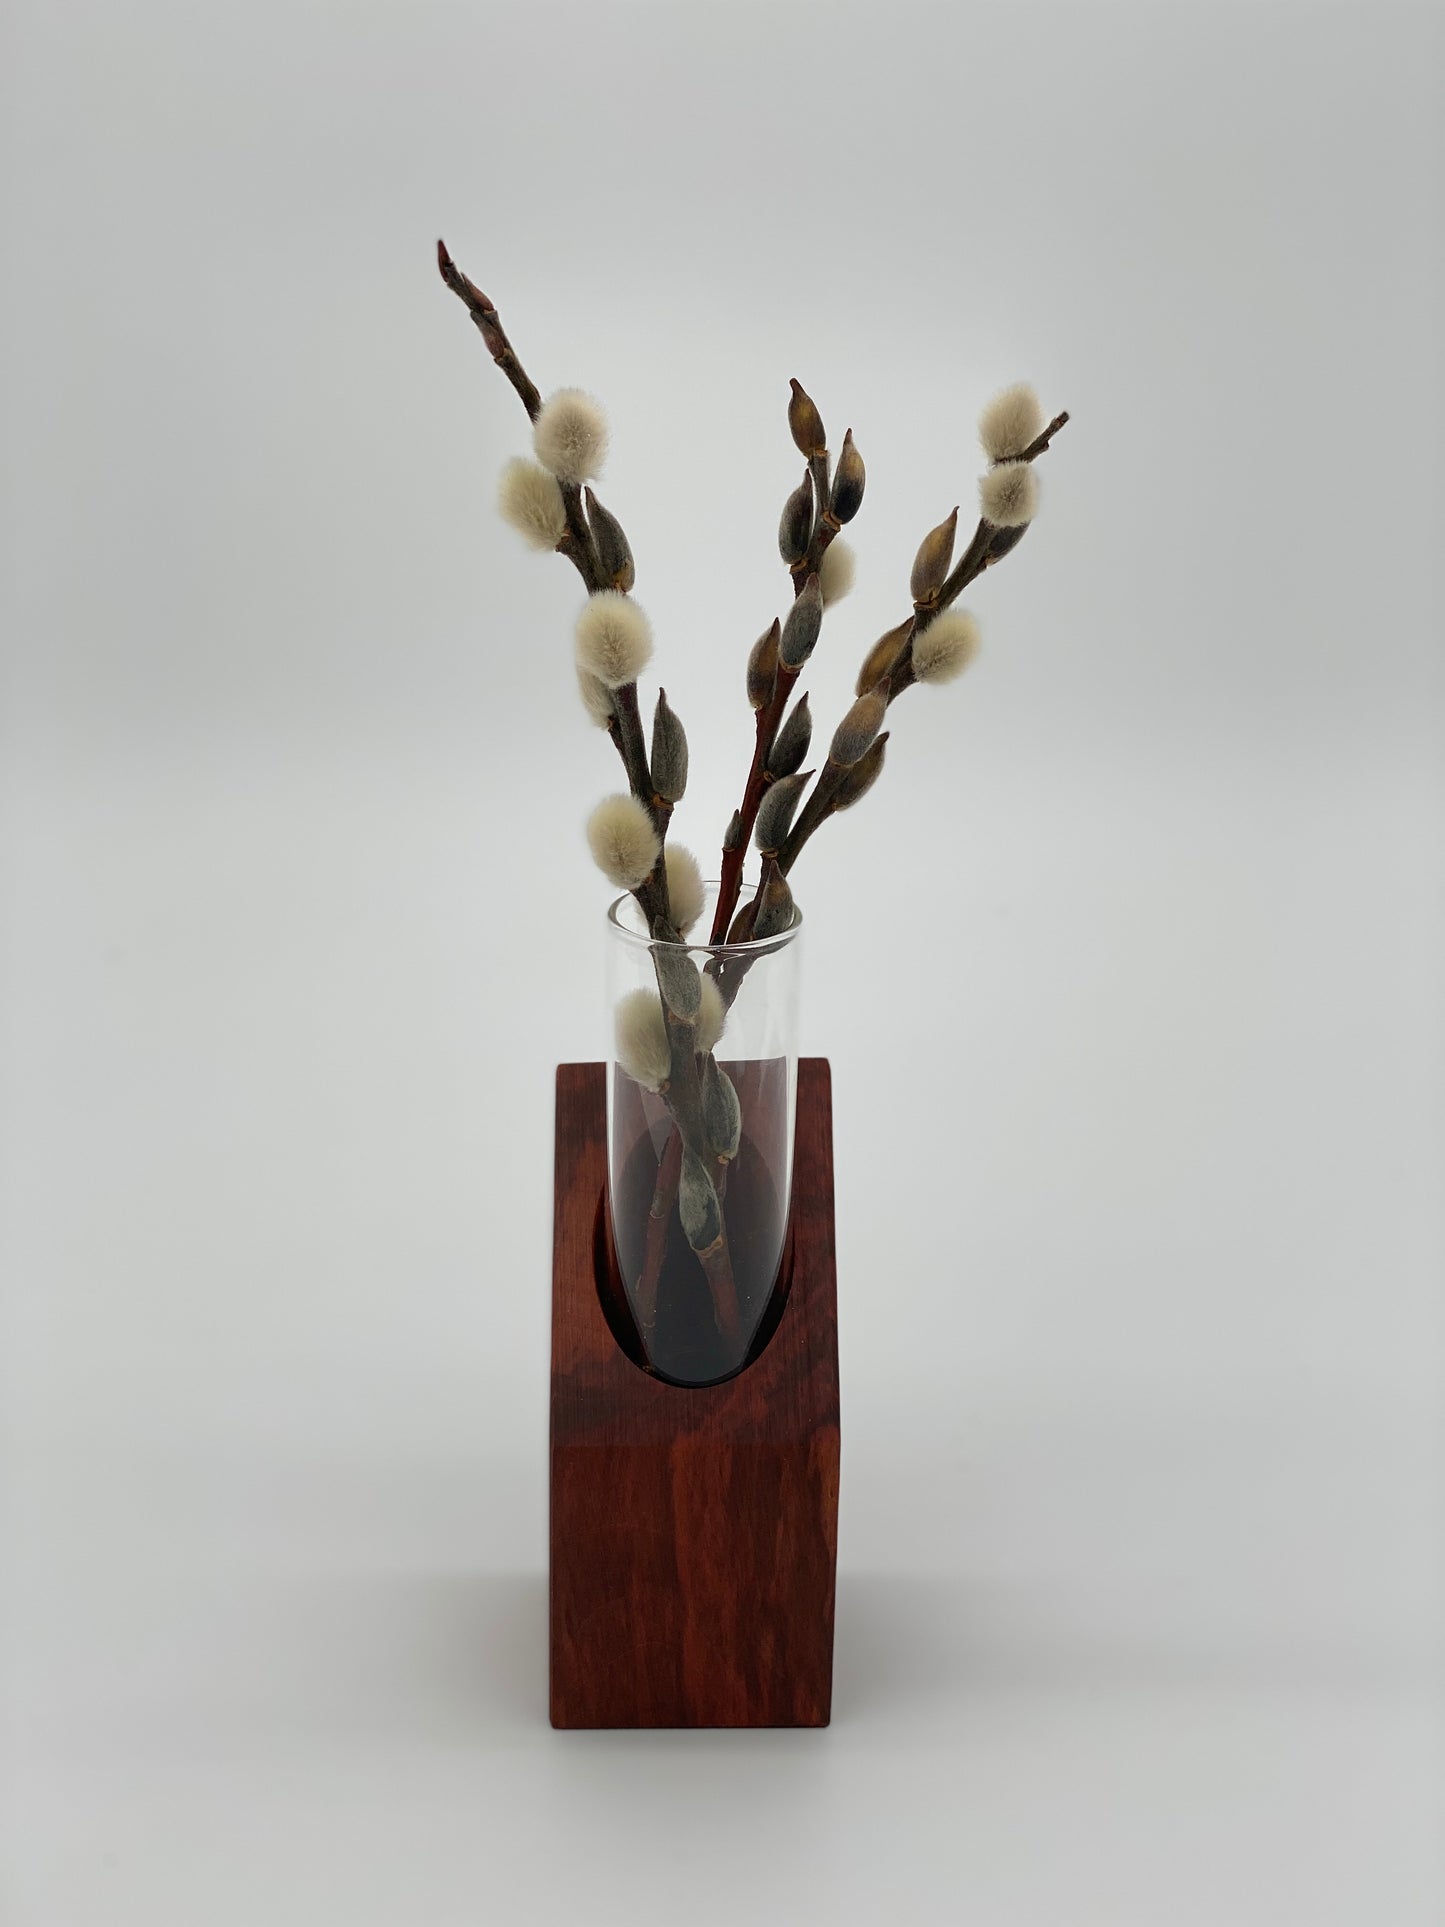 Blumenvase, Anzuchtvase aus heimischen Birnbaumholz handgefertigt